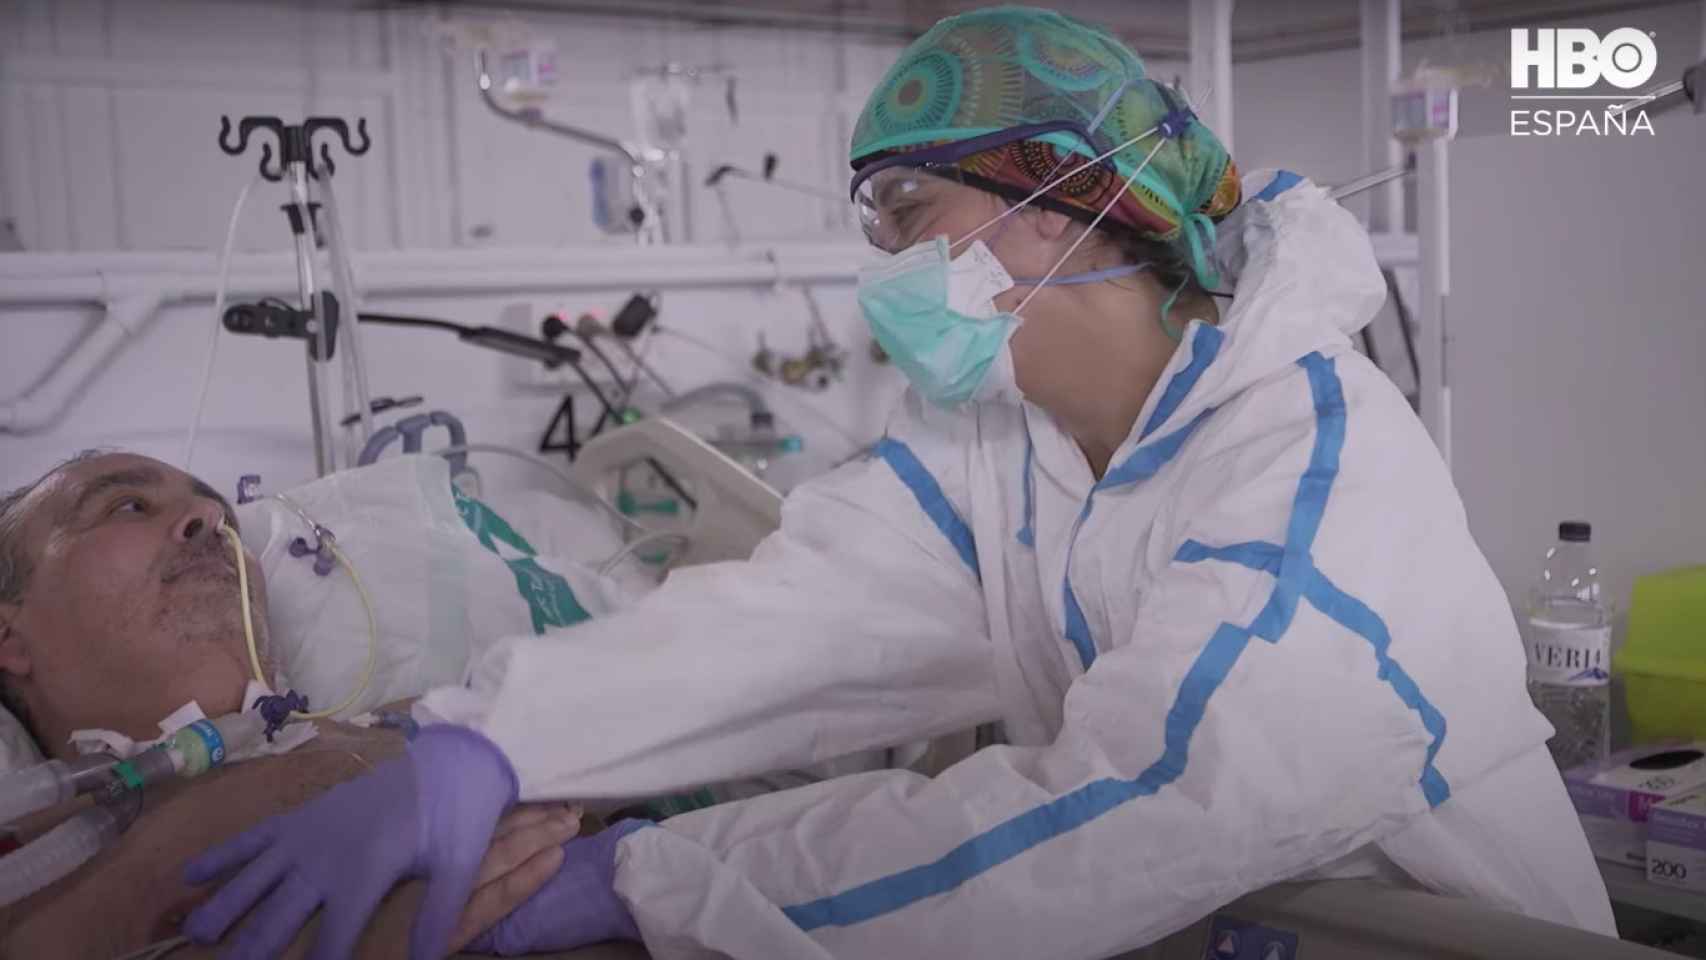 Captura de pantalla del trailer de la serie 'Vitals' que un hospital de Barcelona durante la pandemia / HBO ESPAÑA